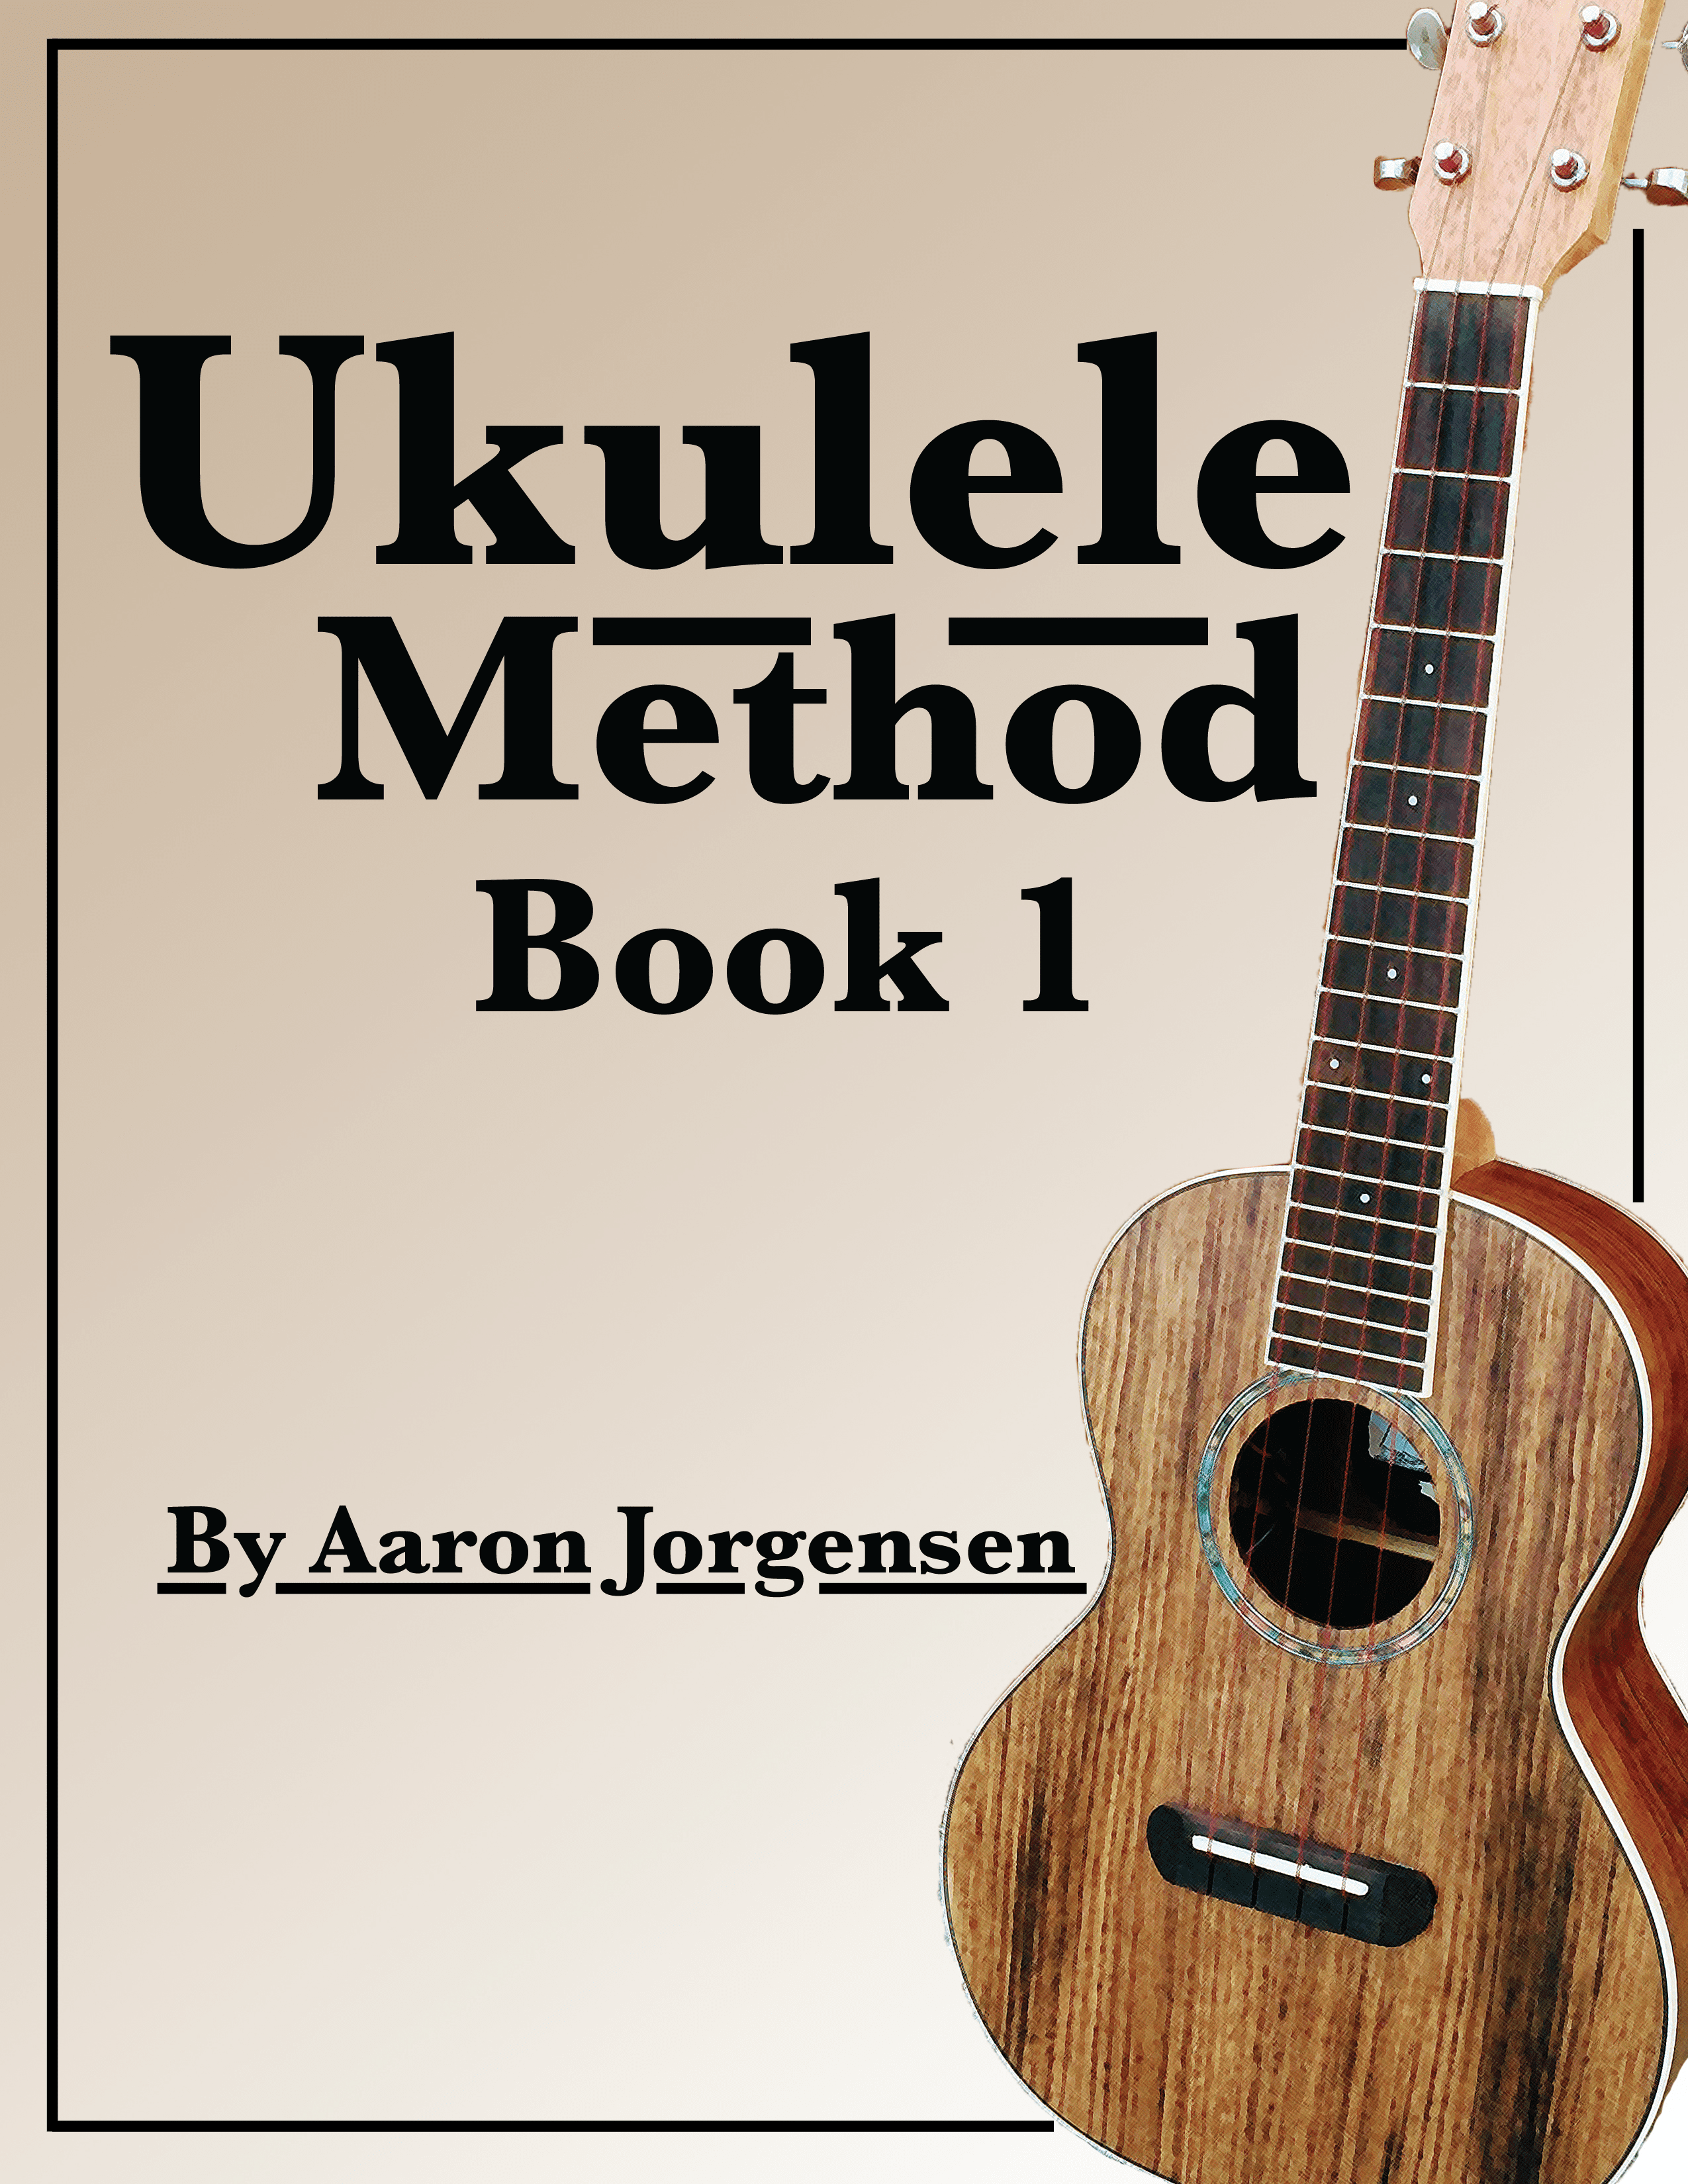 Beginning Ukulele Lesson Free - Murphy's Guitars